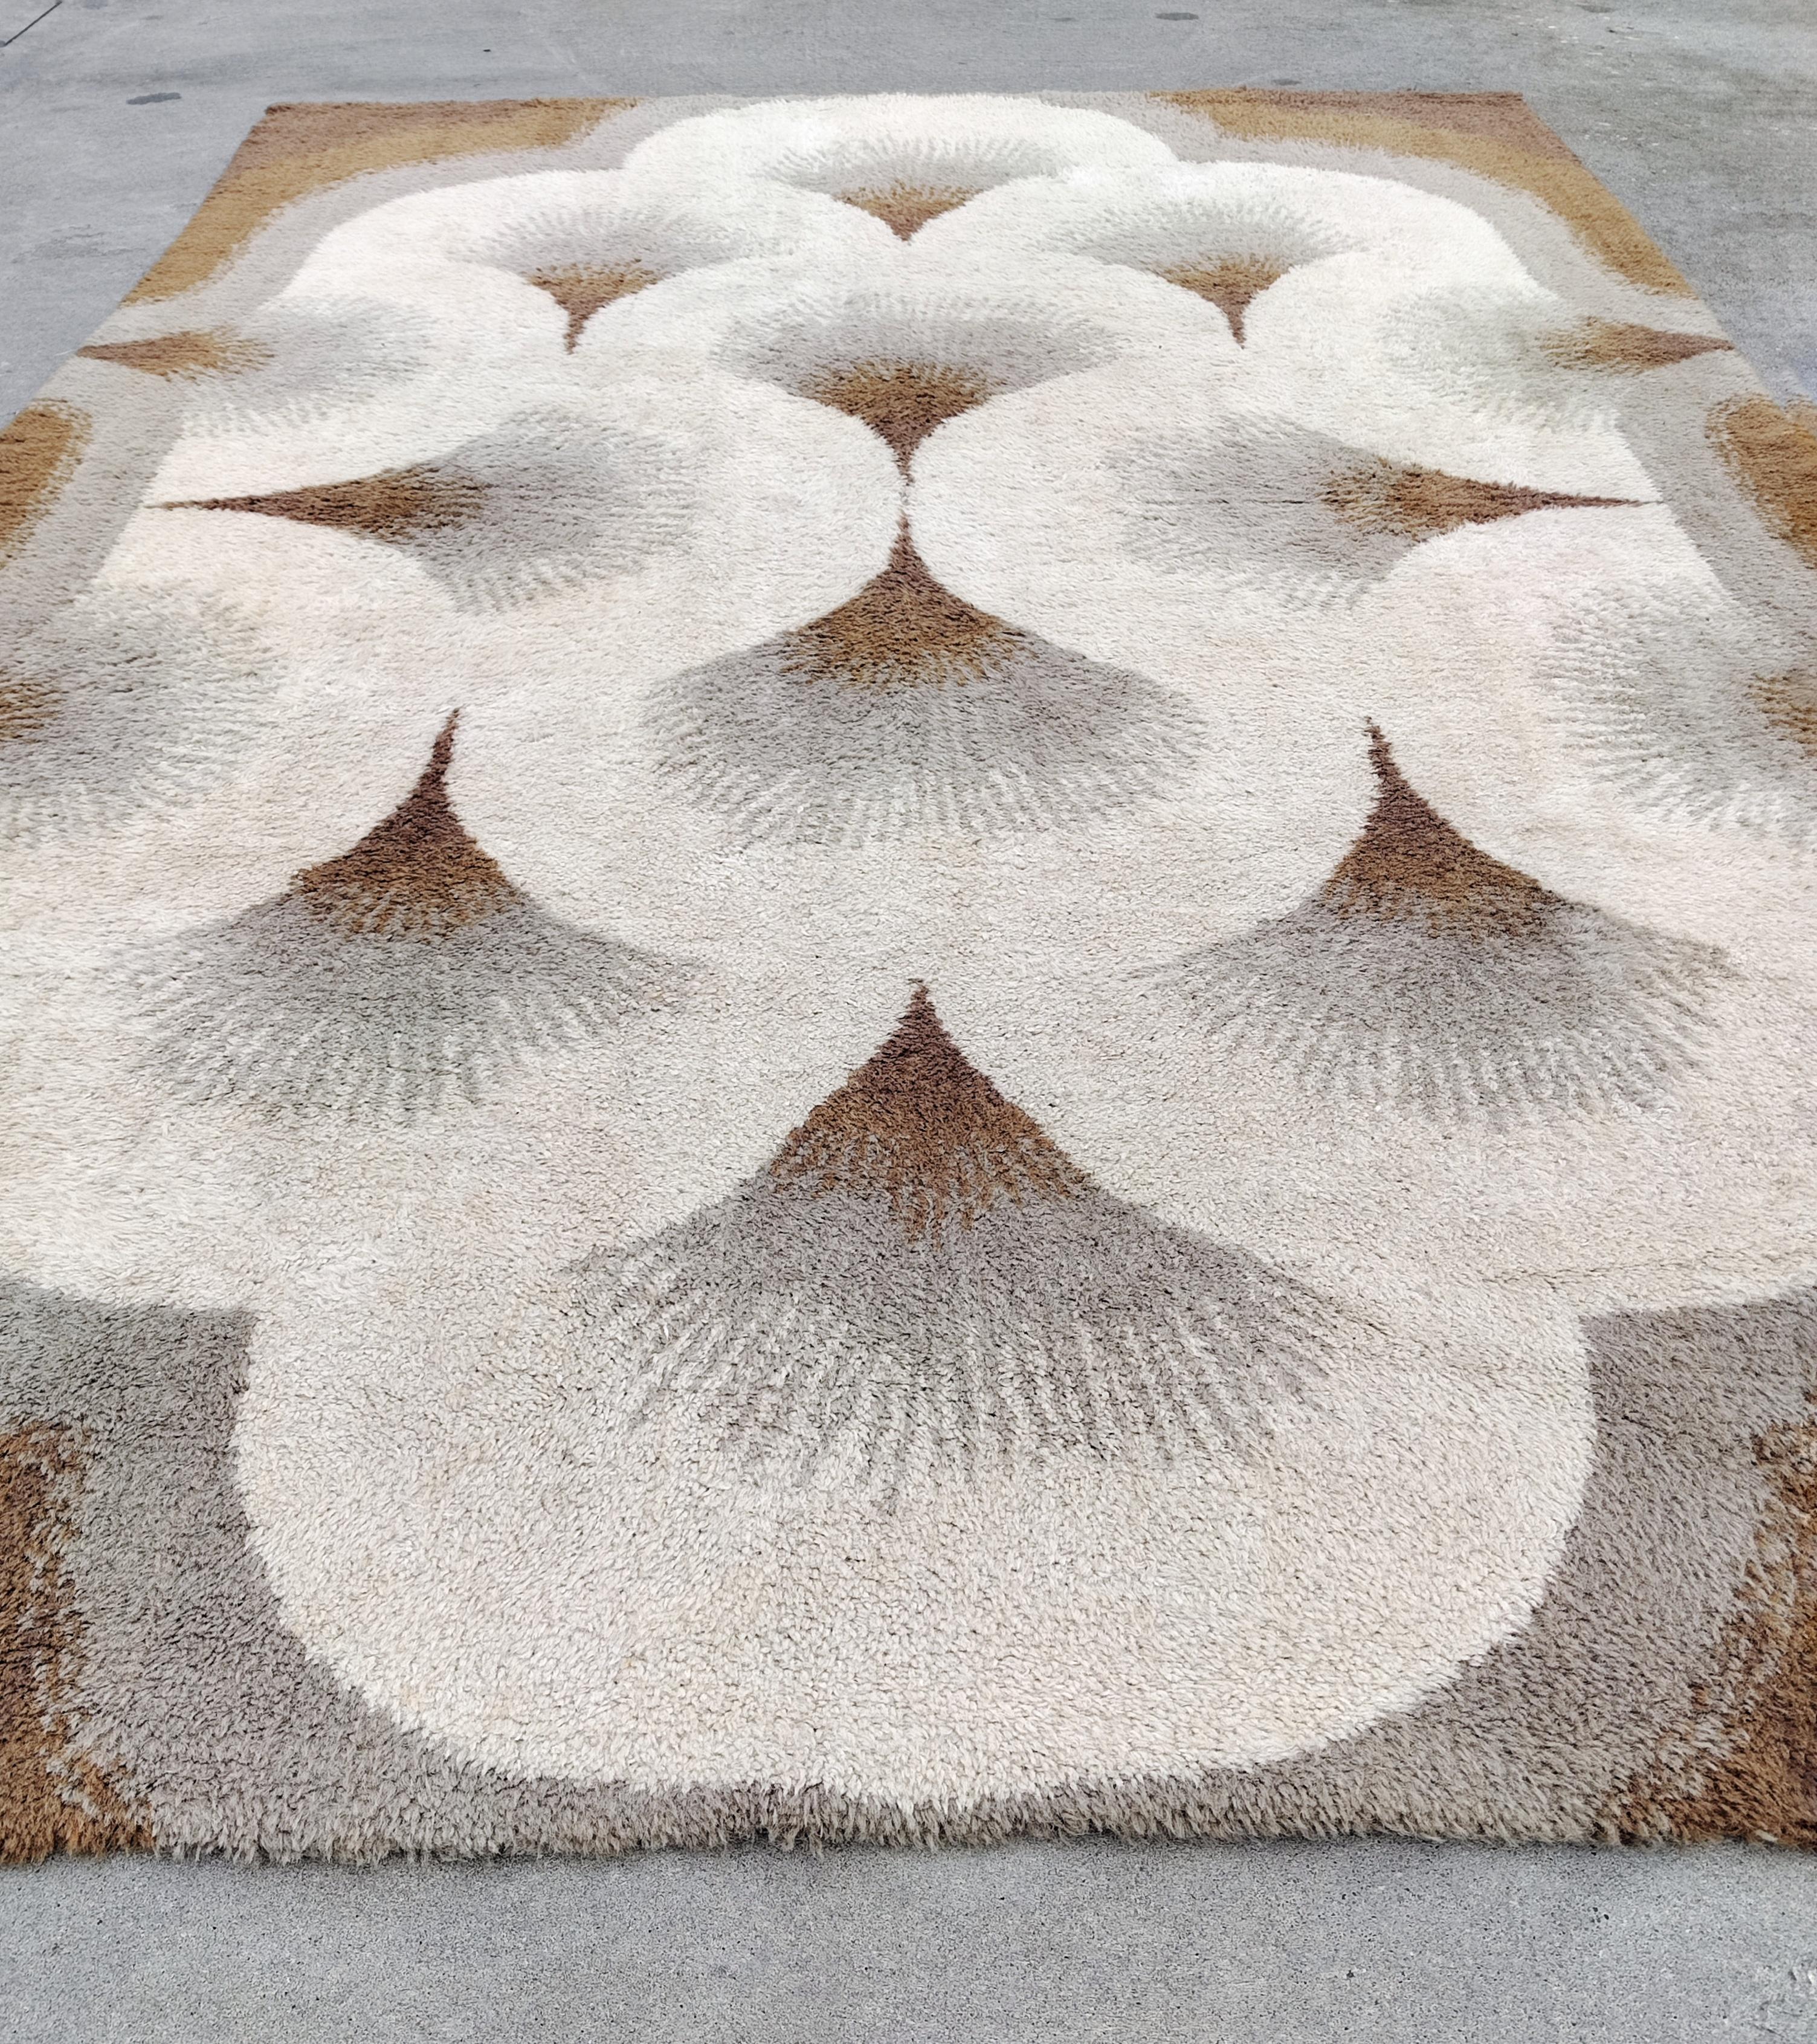 In dieser Auflistung finden Sie eine wunderschöne große Mid Century Modern Woolen Teppich, inspiriert von Art Deco. Das Art-Déco-Muster der Handfächer unterstreicht die Eleganz und Schönheit dieses Teppichs in verschiedenen Braun- und Grautönen. Es